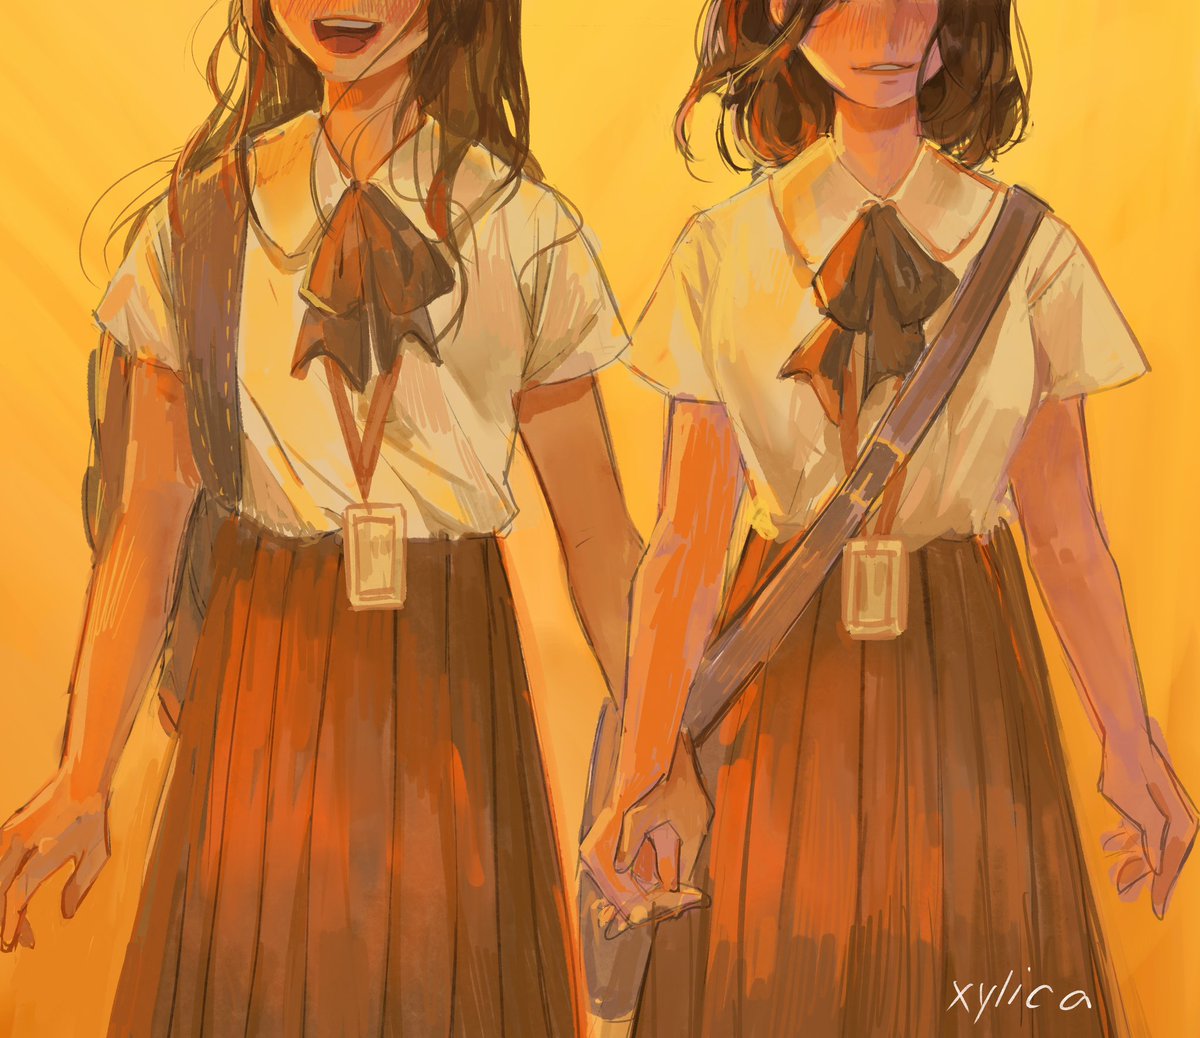 multiple girls 2girls skirt holding hands shirt long hair bag  illustration images